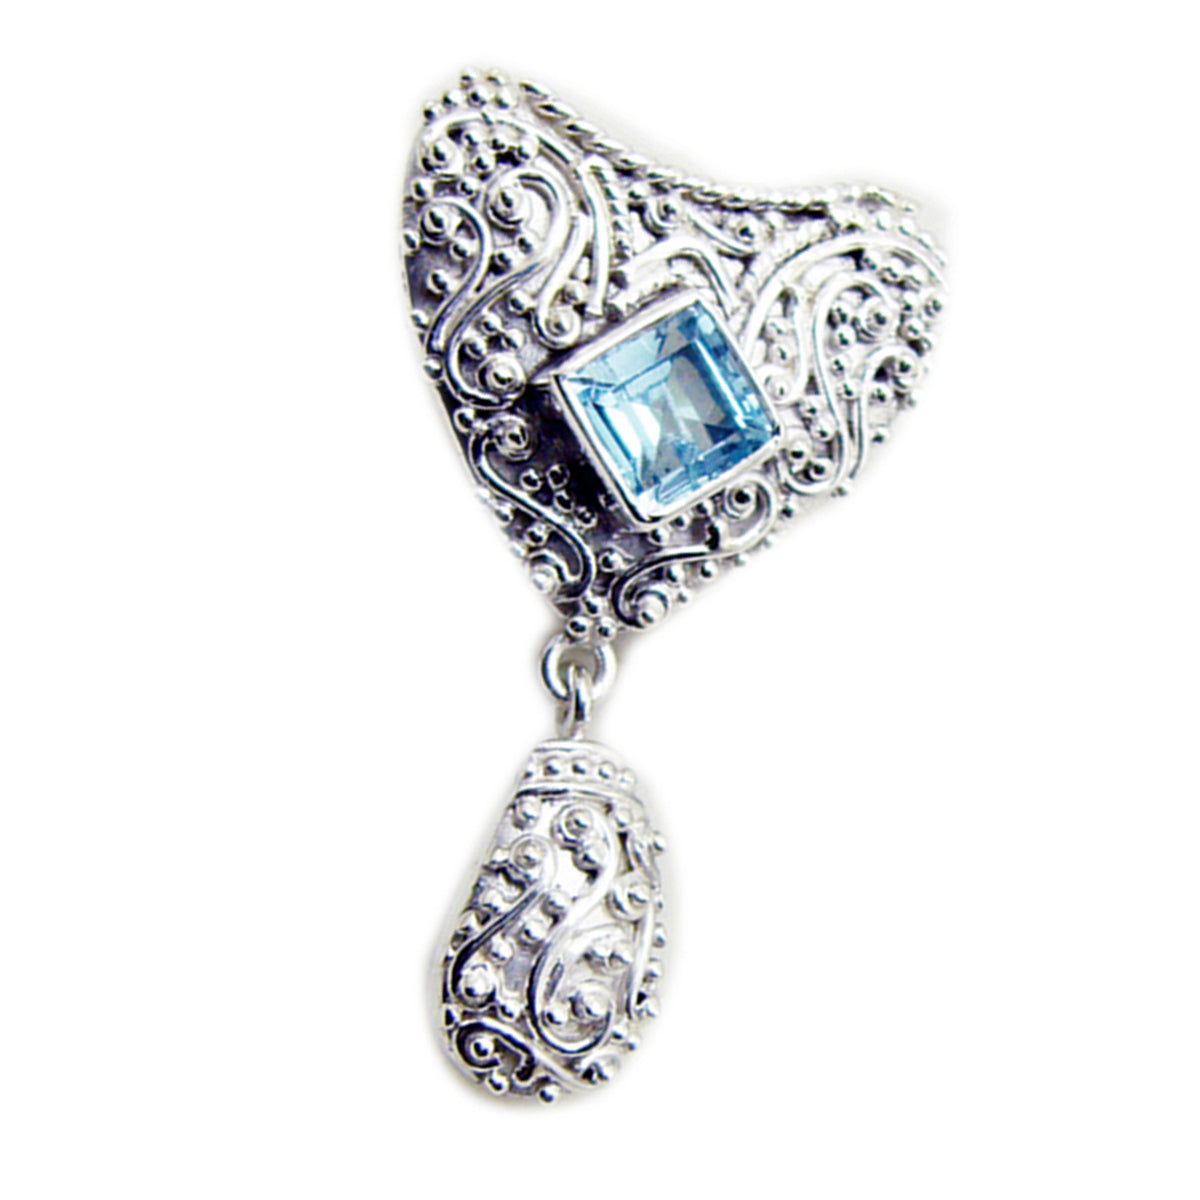 Riyo verrukkelijke edelsteen vierkant gefacetteerd blauw blauw topaas sterling zilveren hanger cadeau voor handgemaakt